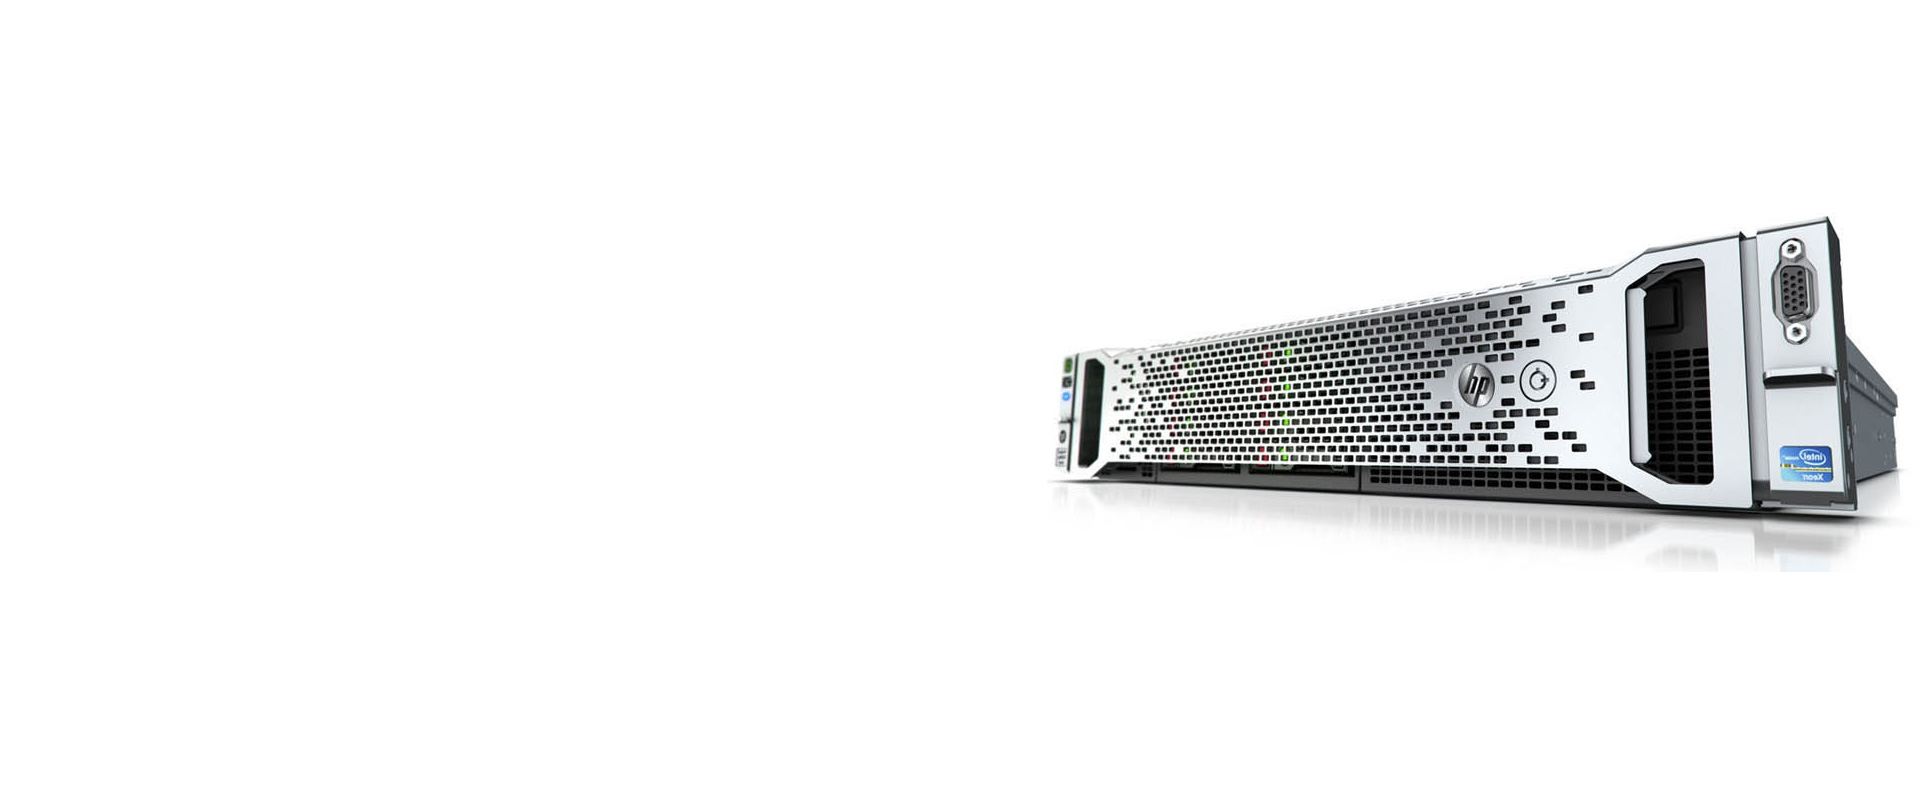 HP Proliant  DL380 Gen10 Server